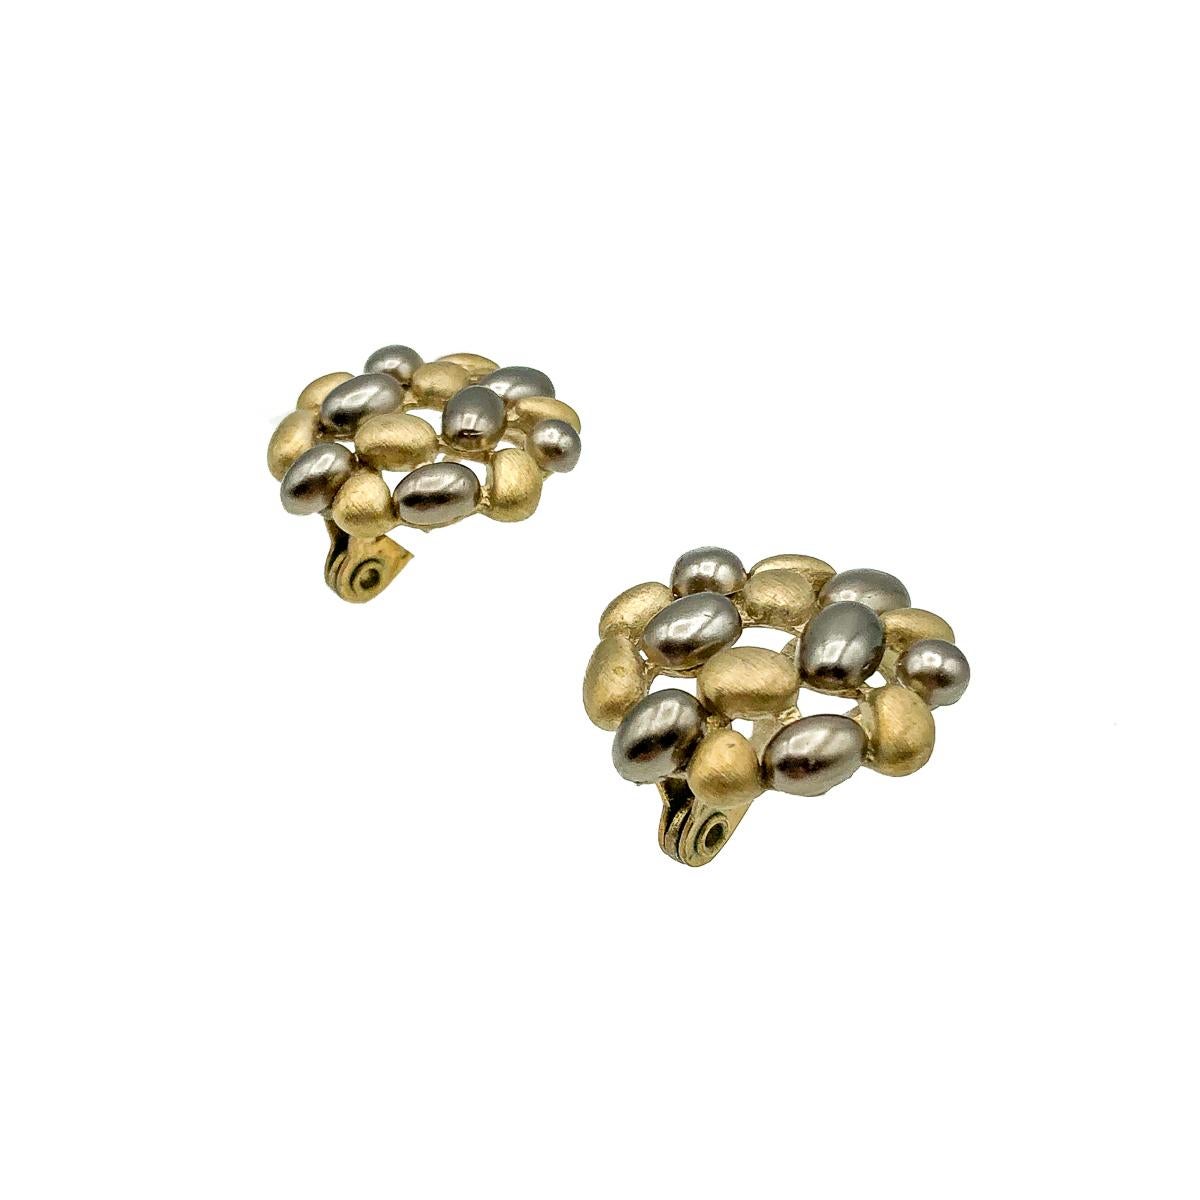 Ein Paar Kieselstein-Ohrringe im Vintage-Stil von Monet. Gefertigt aus gebürstetem Gold mit Harzkieseln. In sehr gutem Zustand, 2 cm, signiert. Mit dem für Monet typischen langsam schließenden Clipmechanismus. Fabelhaftes Design für ein perfektes